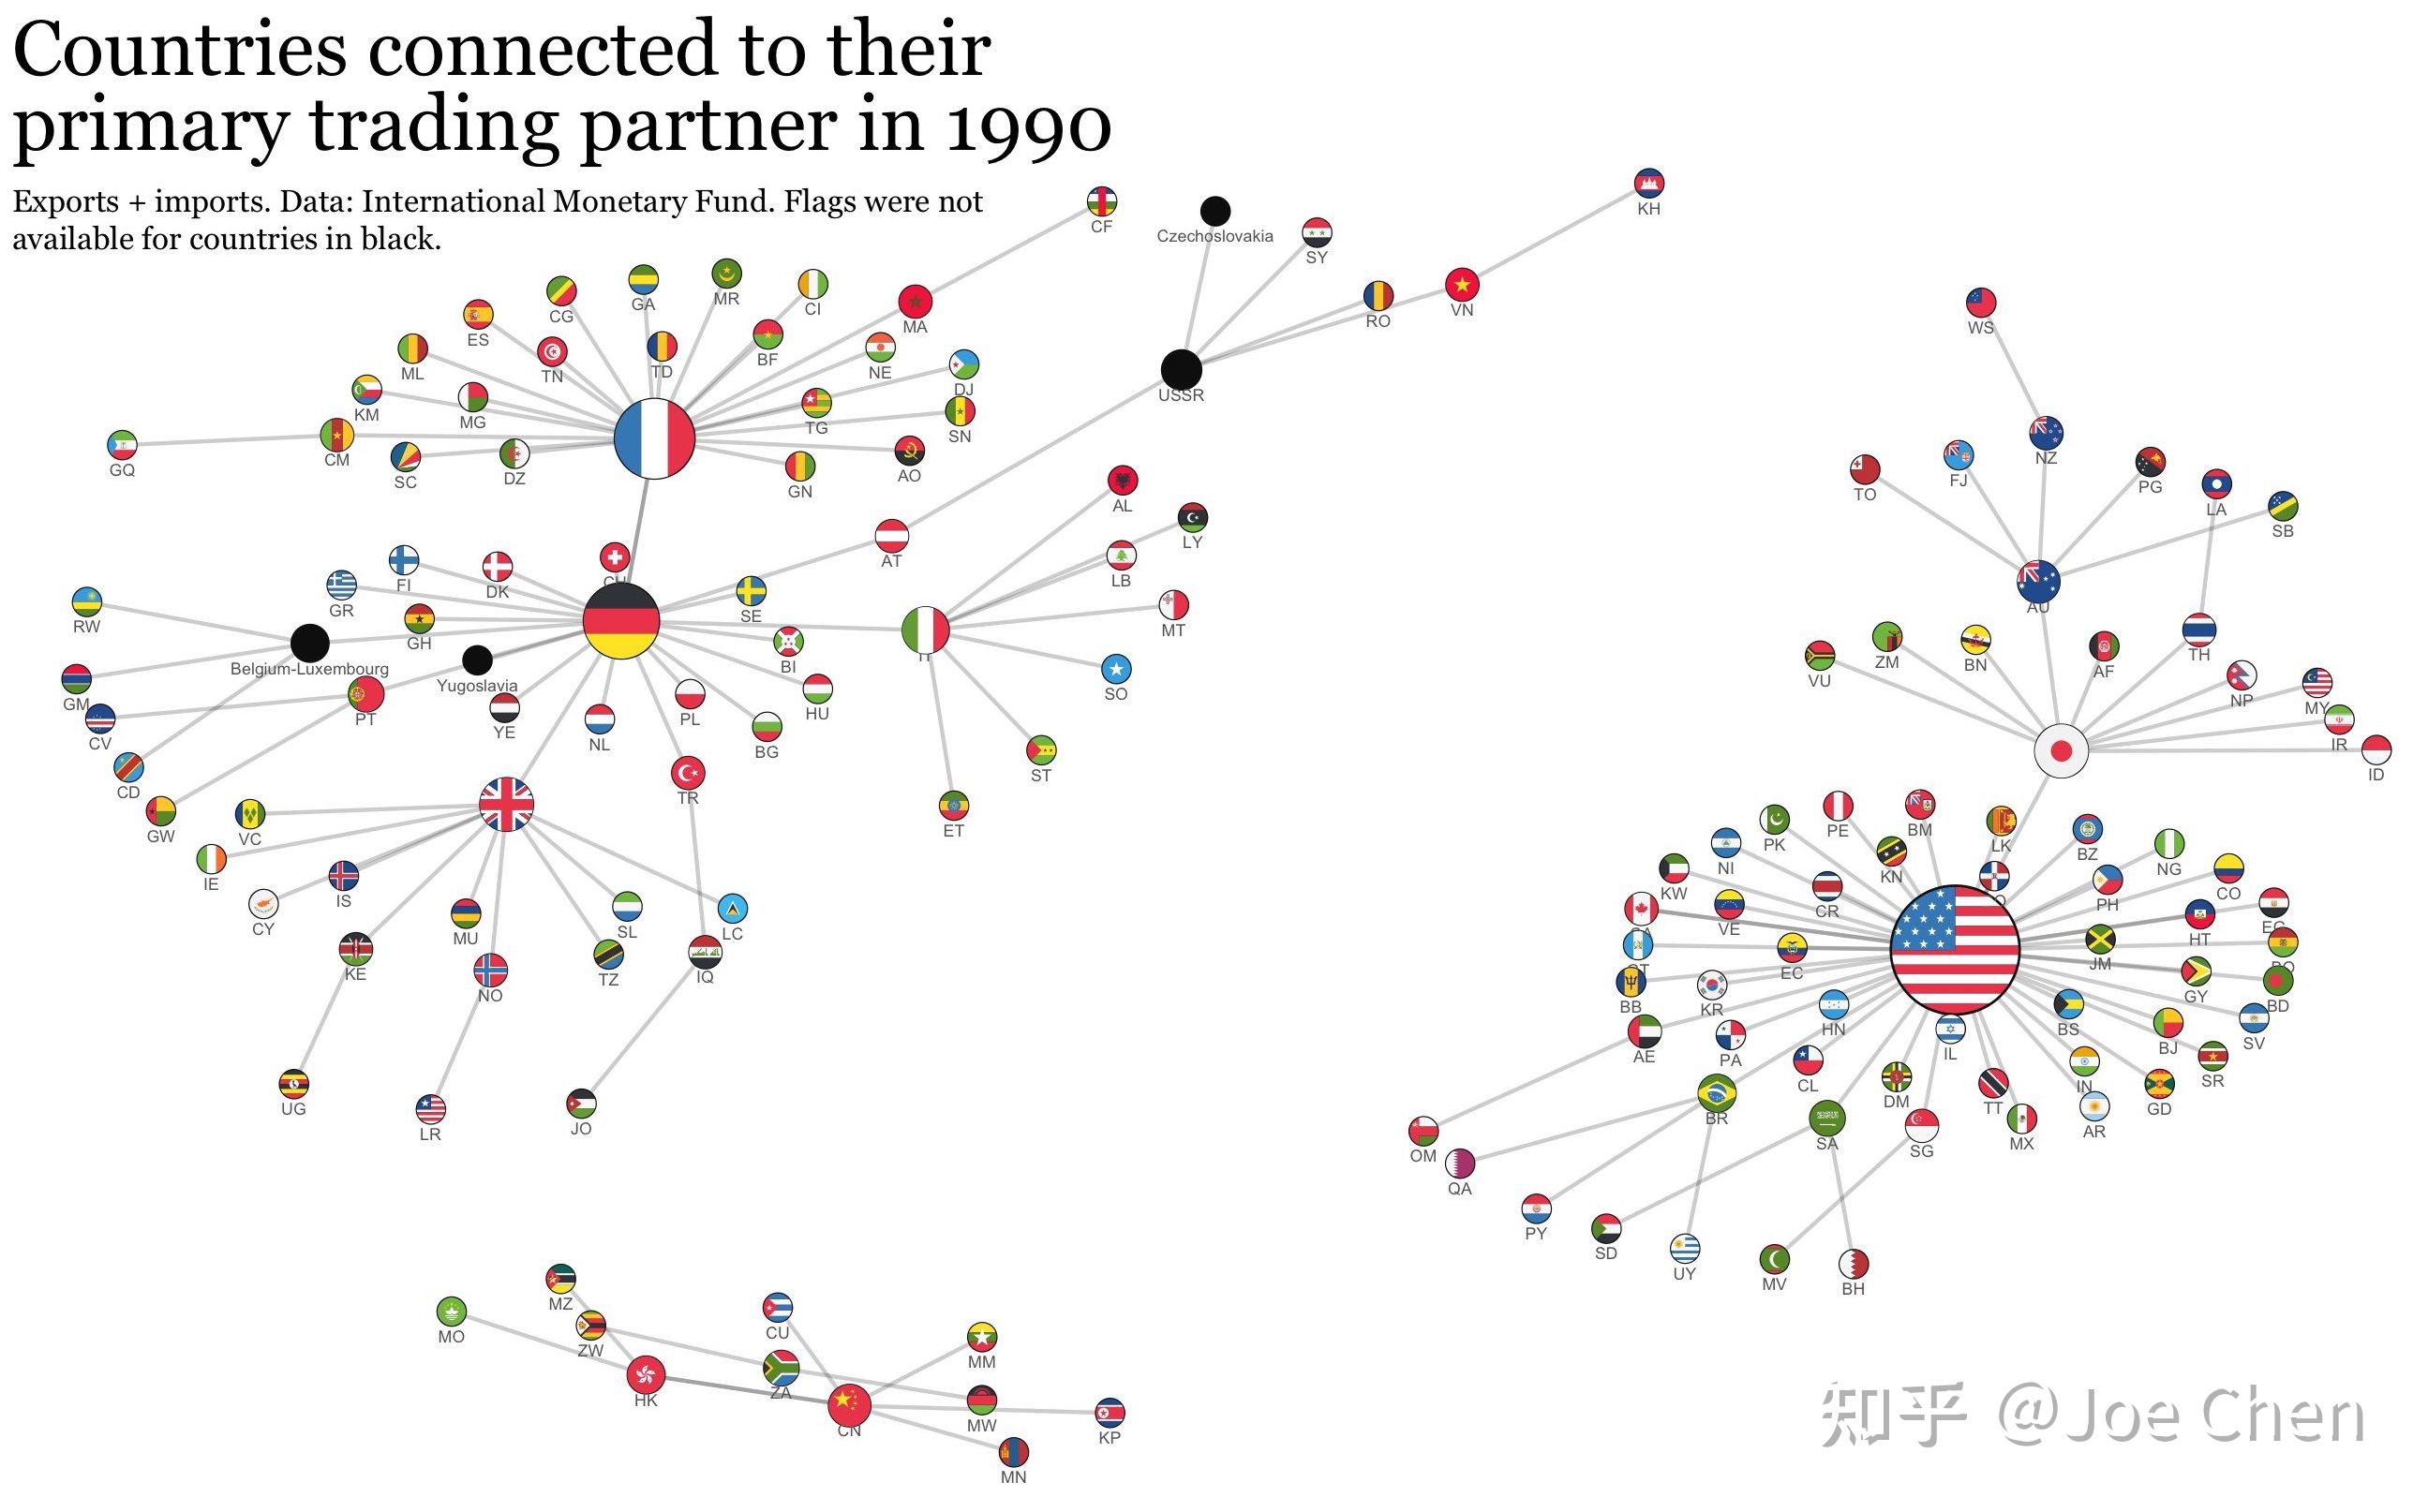 中国贸易伙伴前五大贸易伙伴排名变化 - 拼客号